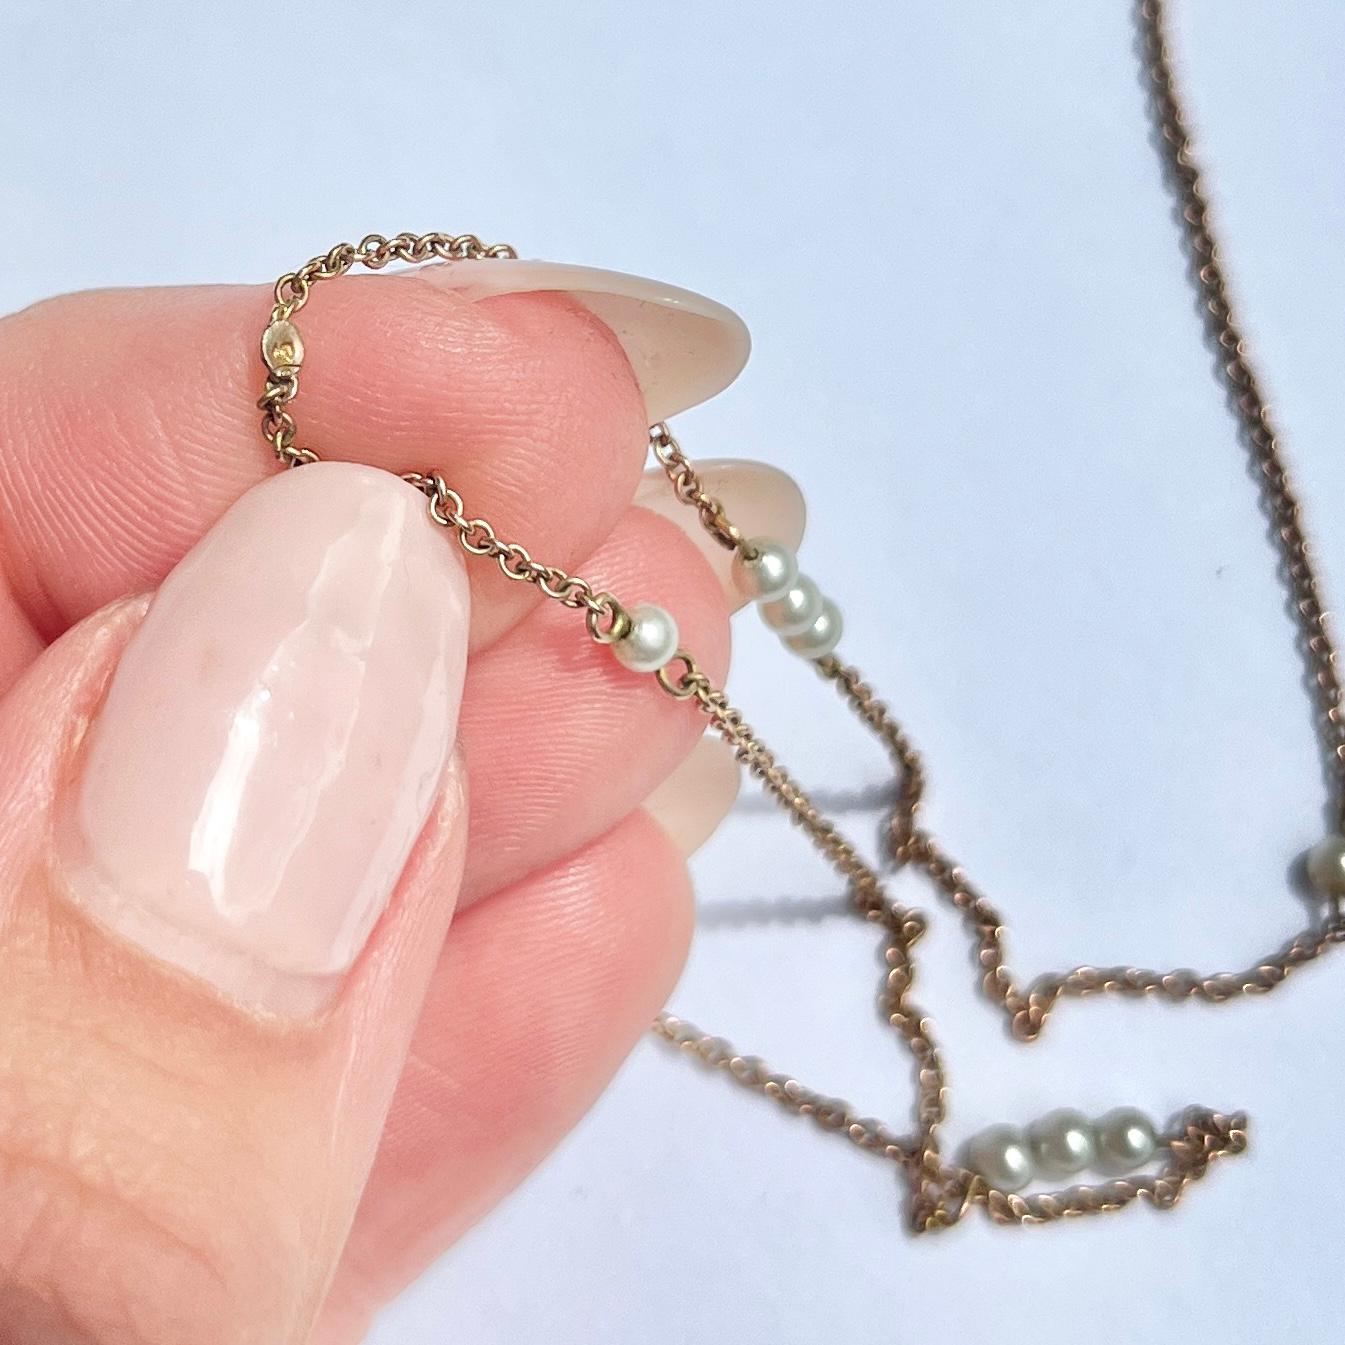 Ce collier très délicat est composé d'une fine chaîne en or 9 carats et contient des trios et des perles simples. Il n'y a pas de fermoir, mais il est suffisamment long pour être porté sur la tête. 

Longueur : 89 cm
Diamètre de la perle : 2